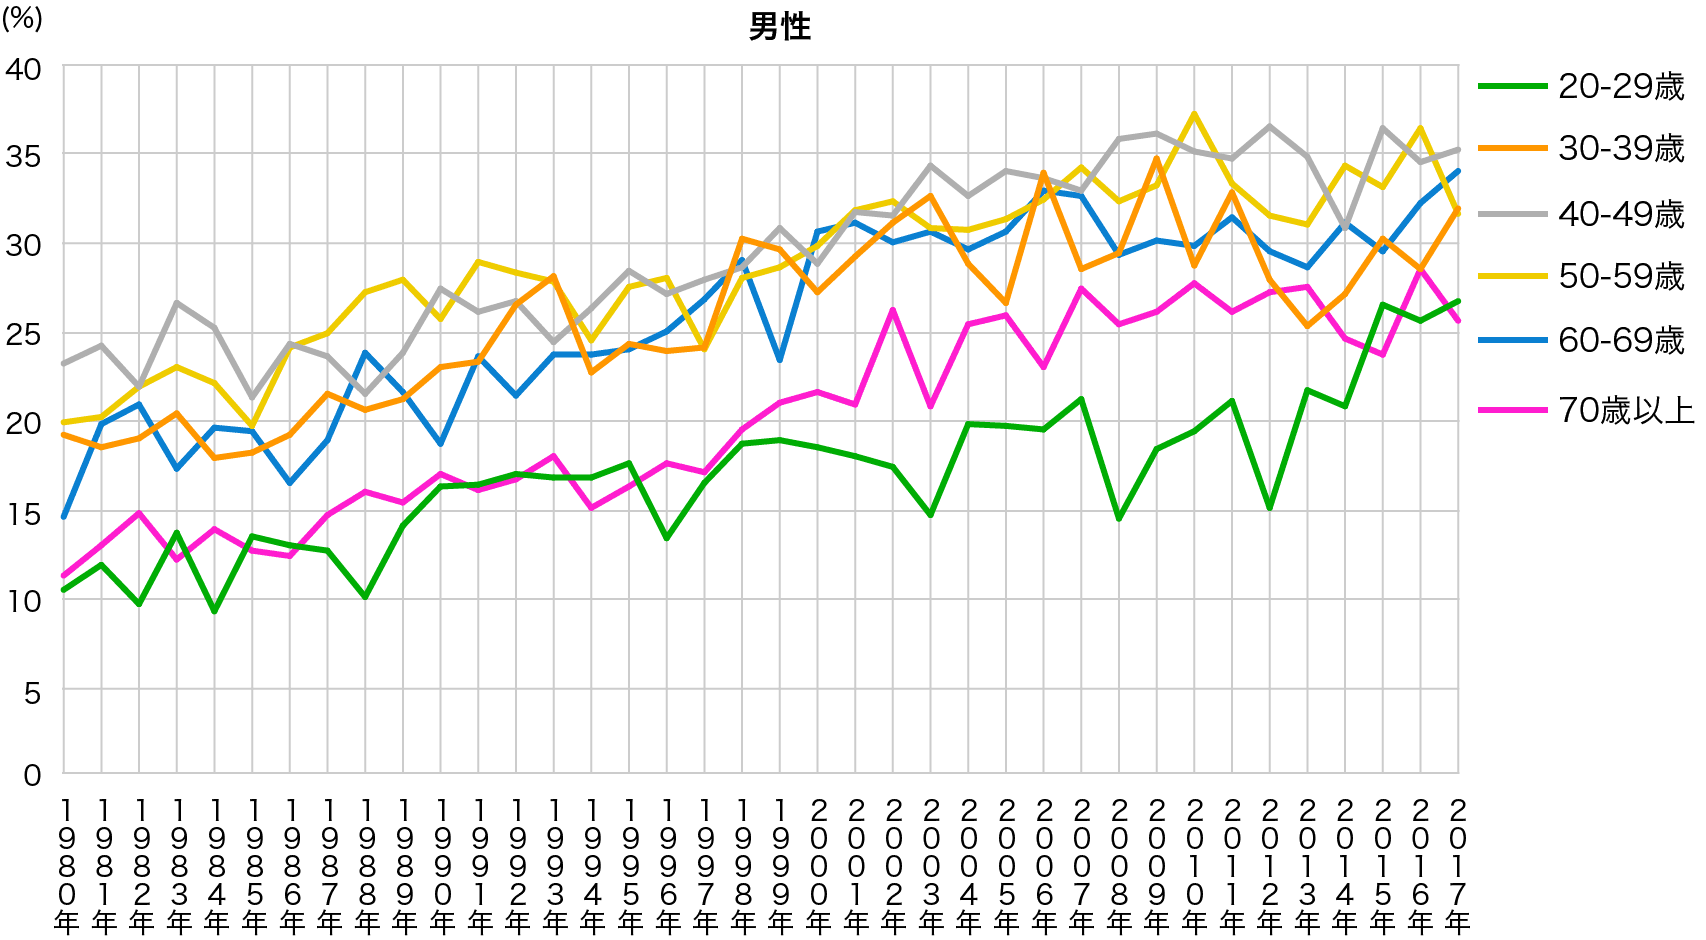 日本人成人男性の年齢階級別にみた肥満者（BMI≧25）の割合の年次推移